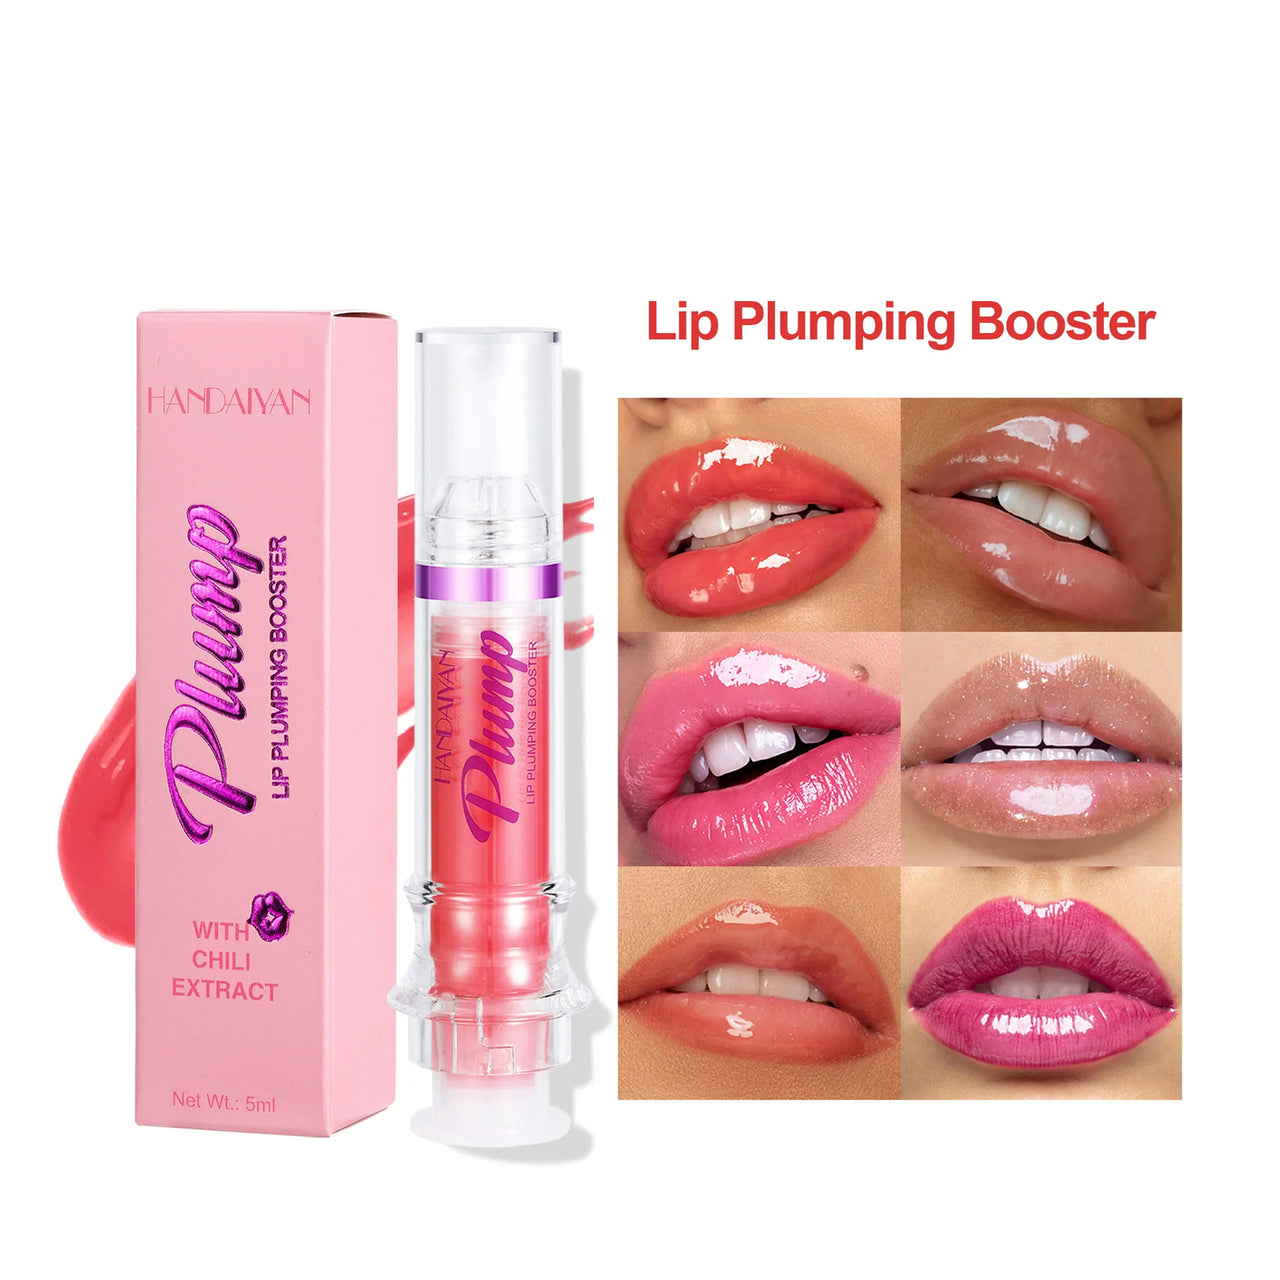 New Tube Lip - Rich Lip Color Slightly Spicy Lip Honey Lip Glass Mirror Face Lip Mirror Liquid Lipstick